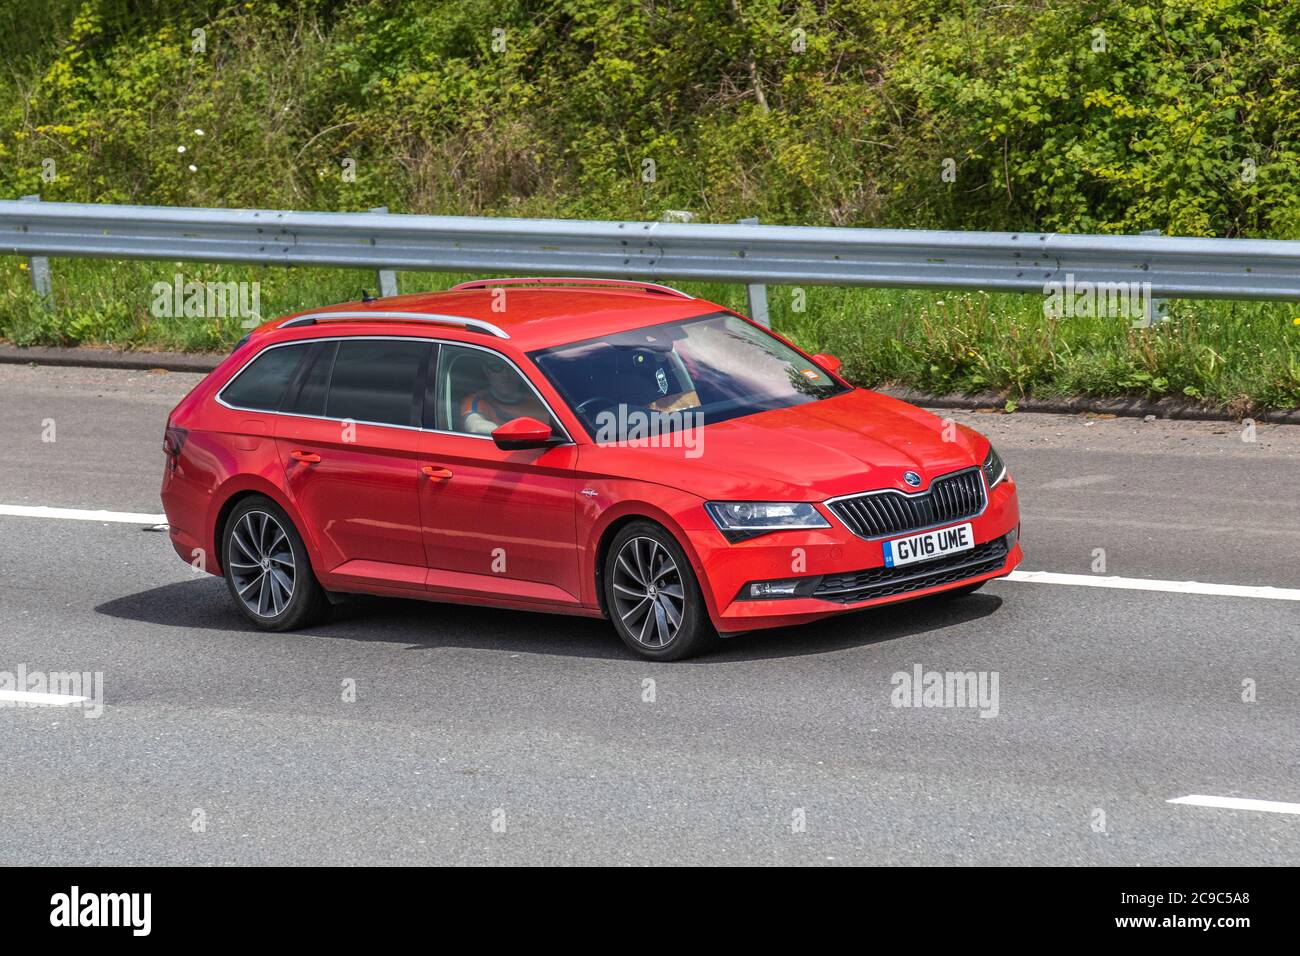 2016 Red Škoda superbe Laurin ET Klement; véhicules mobiles, voitures conduisant des véhicules sur les routes britanniques, moteurs, conduite sur le réseau d'autoroute M6. Banque D'Images